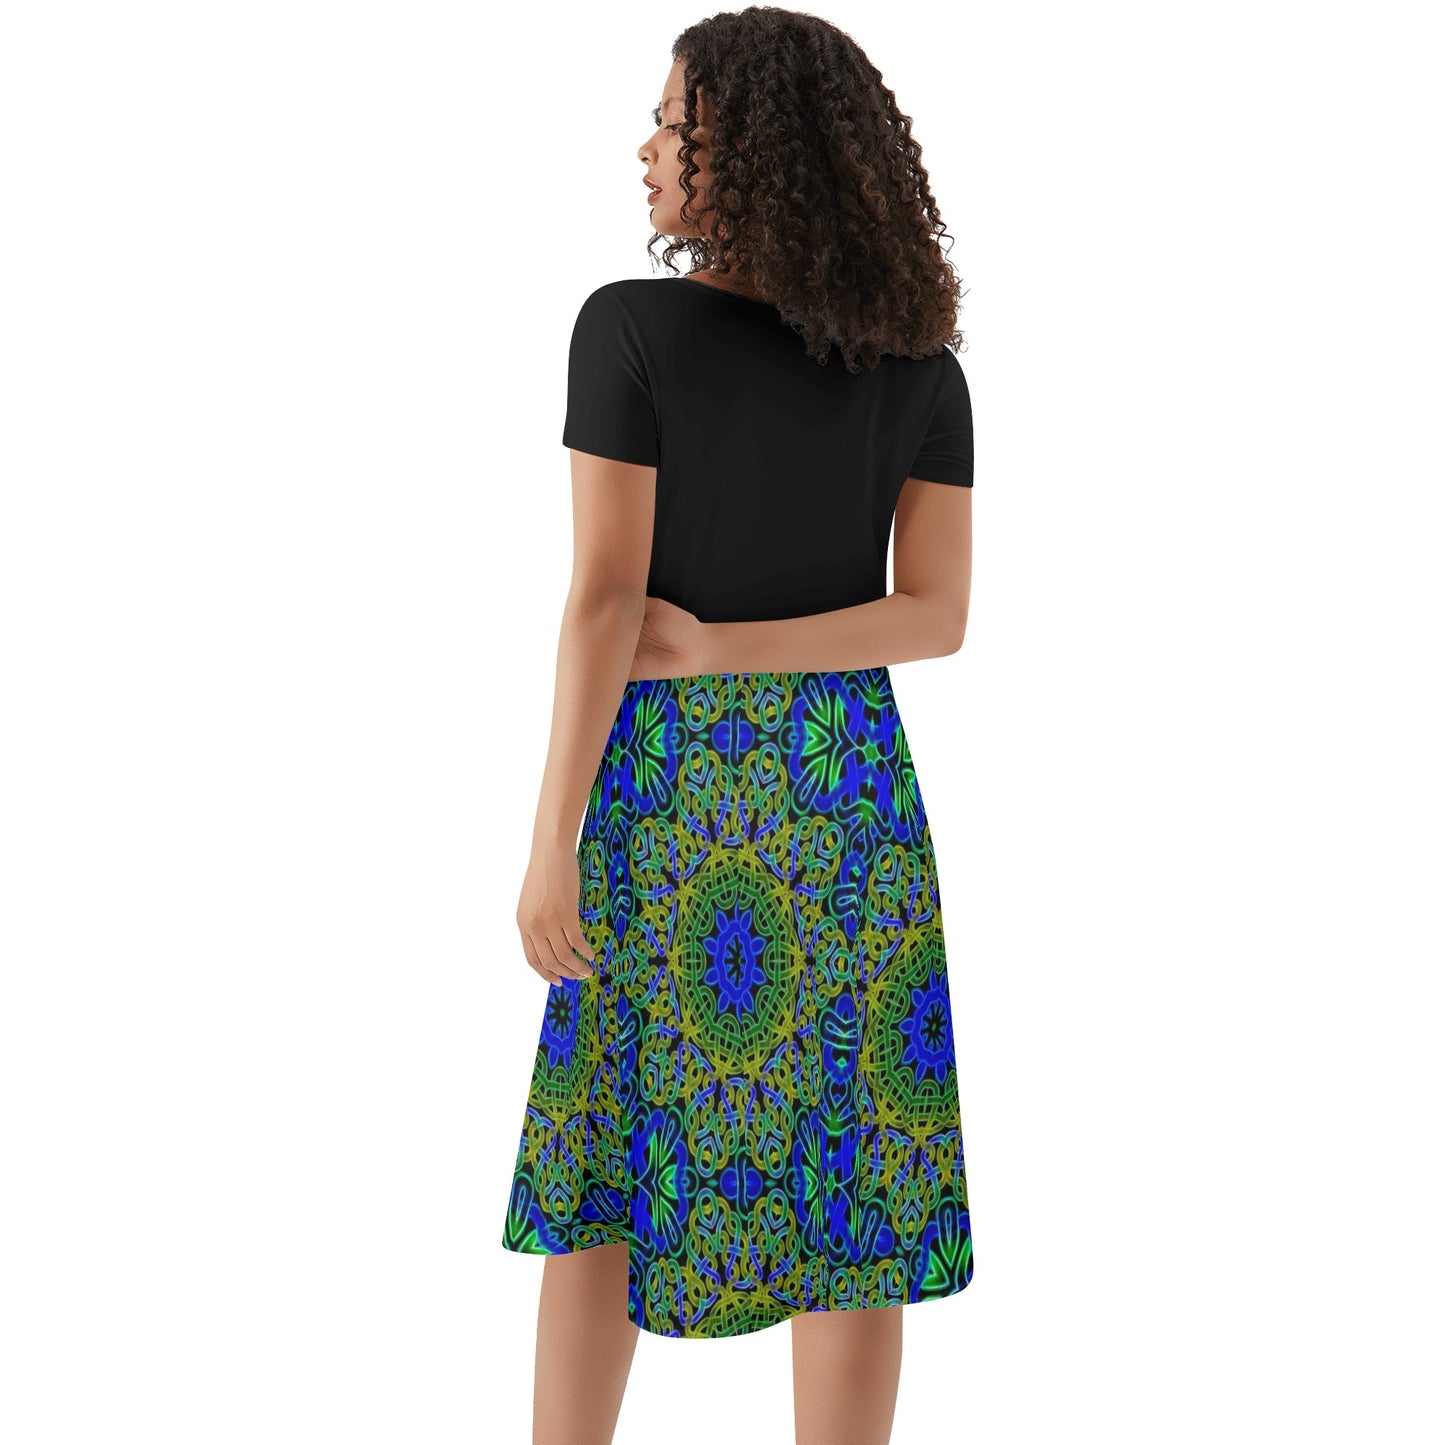 Blue Green Celtic Kaleidoscope Womens Black Ruffle Summer Dress